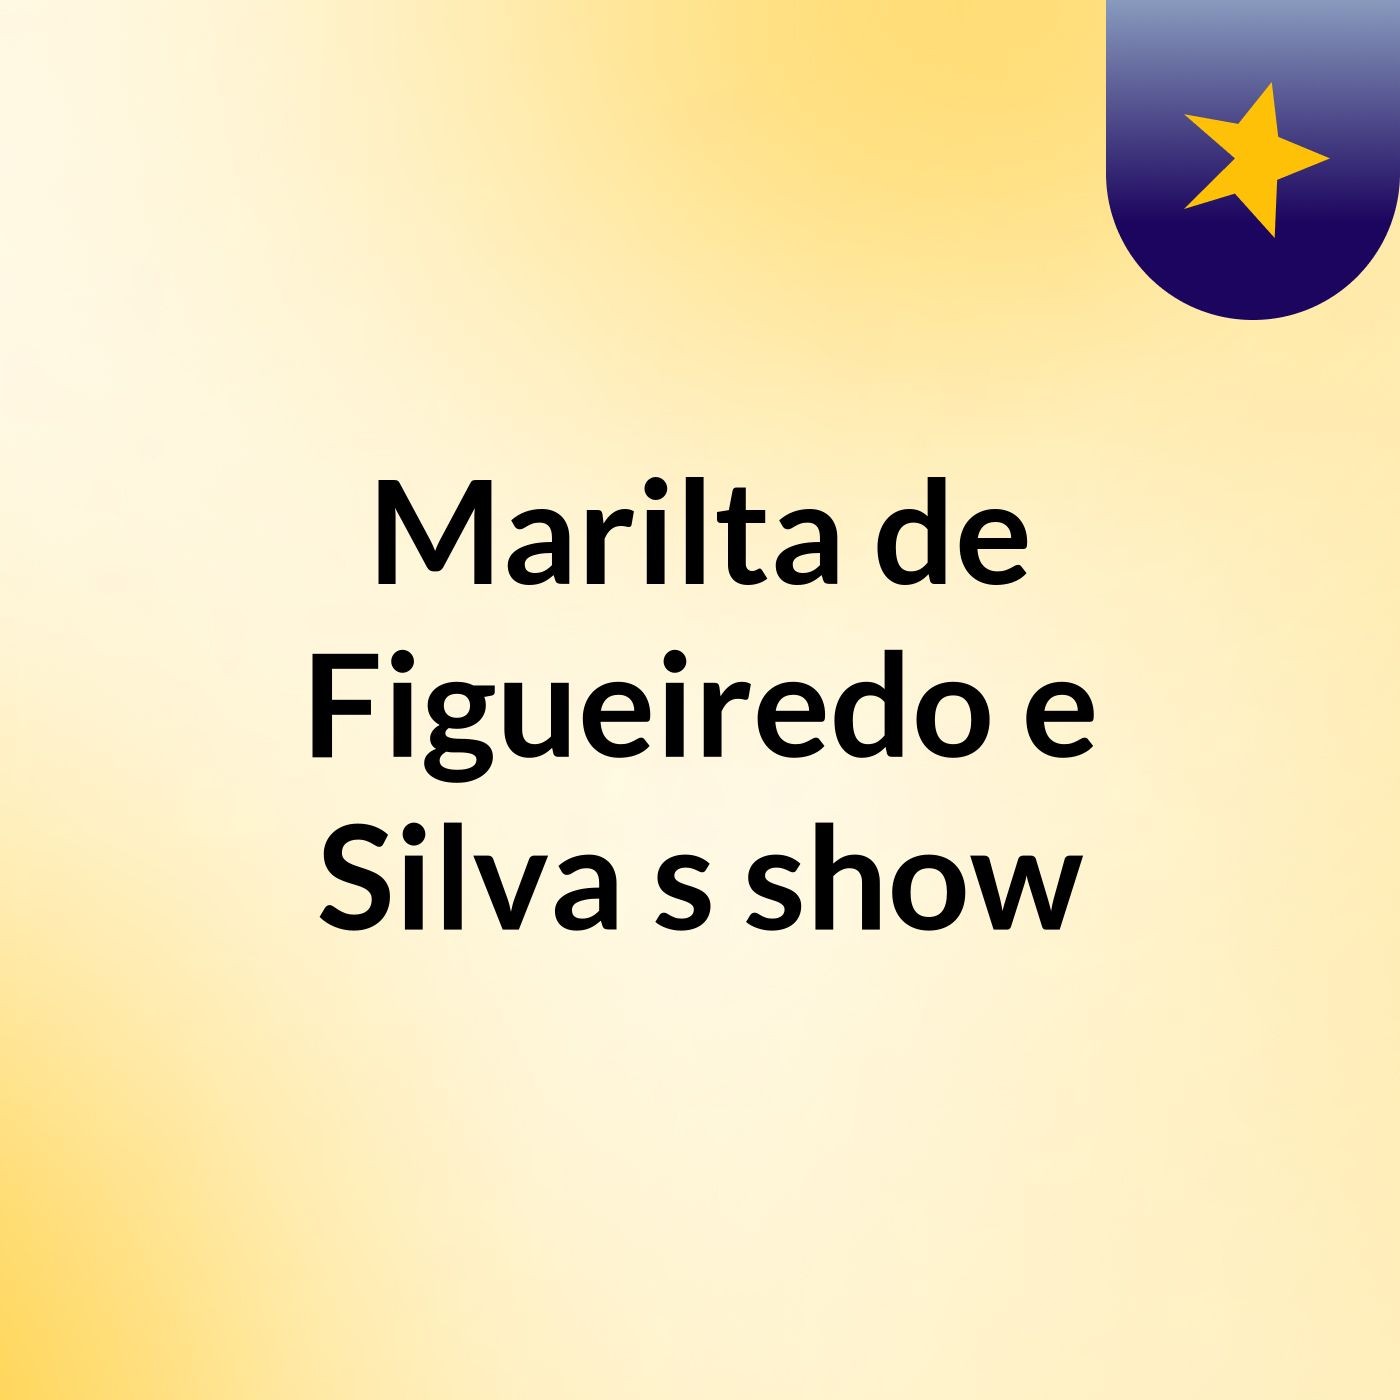 ruidos Marilta de Figueiredo e Silva's show